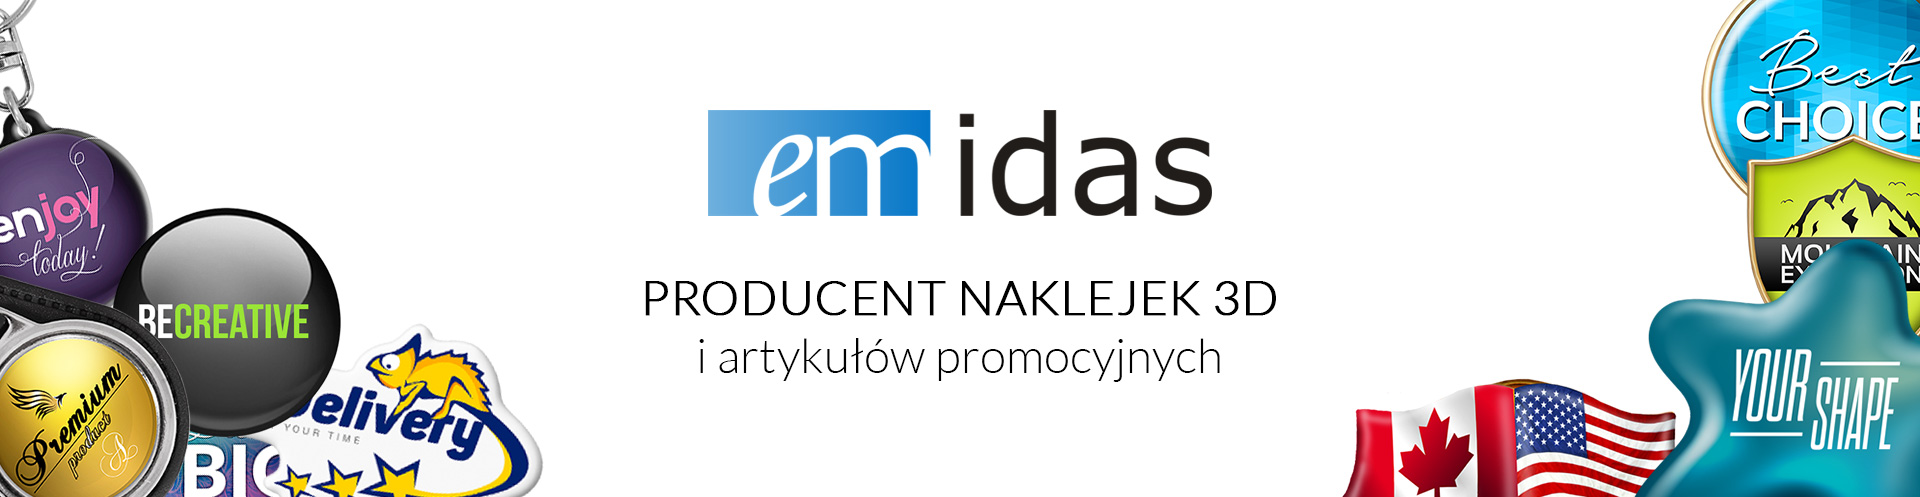 EMIDAS | Producent naklejek 3D i artykułów promocyjnych